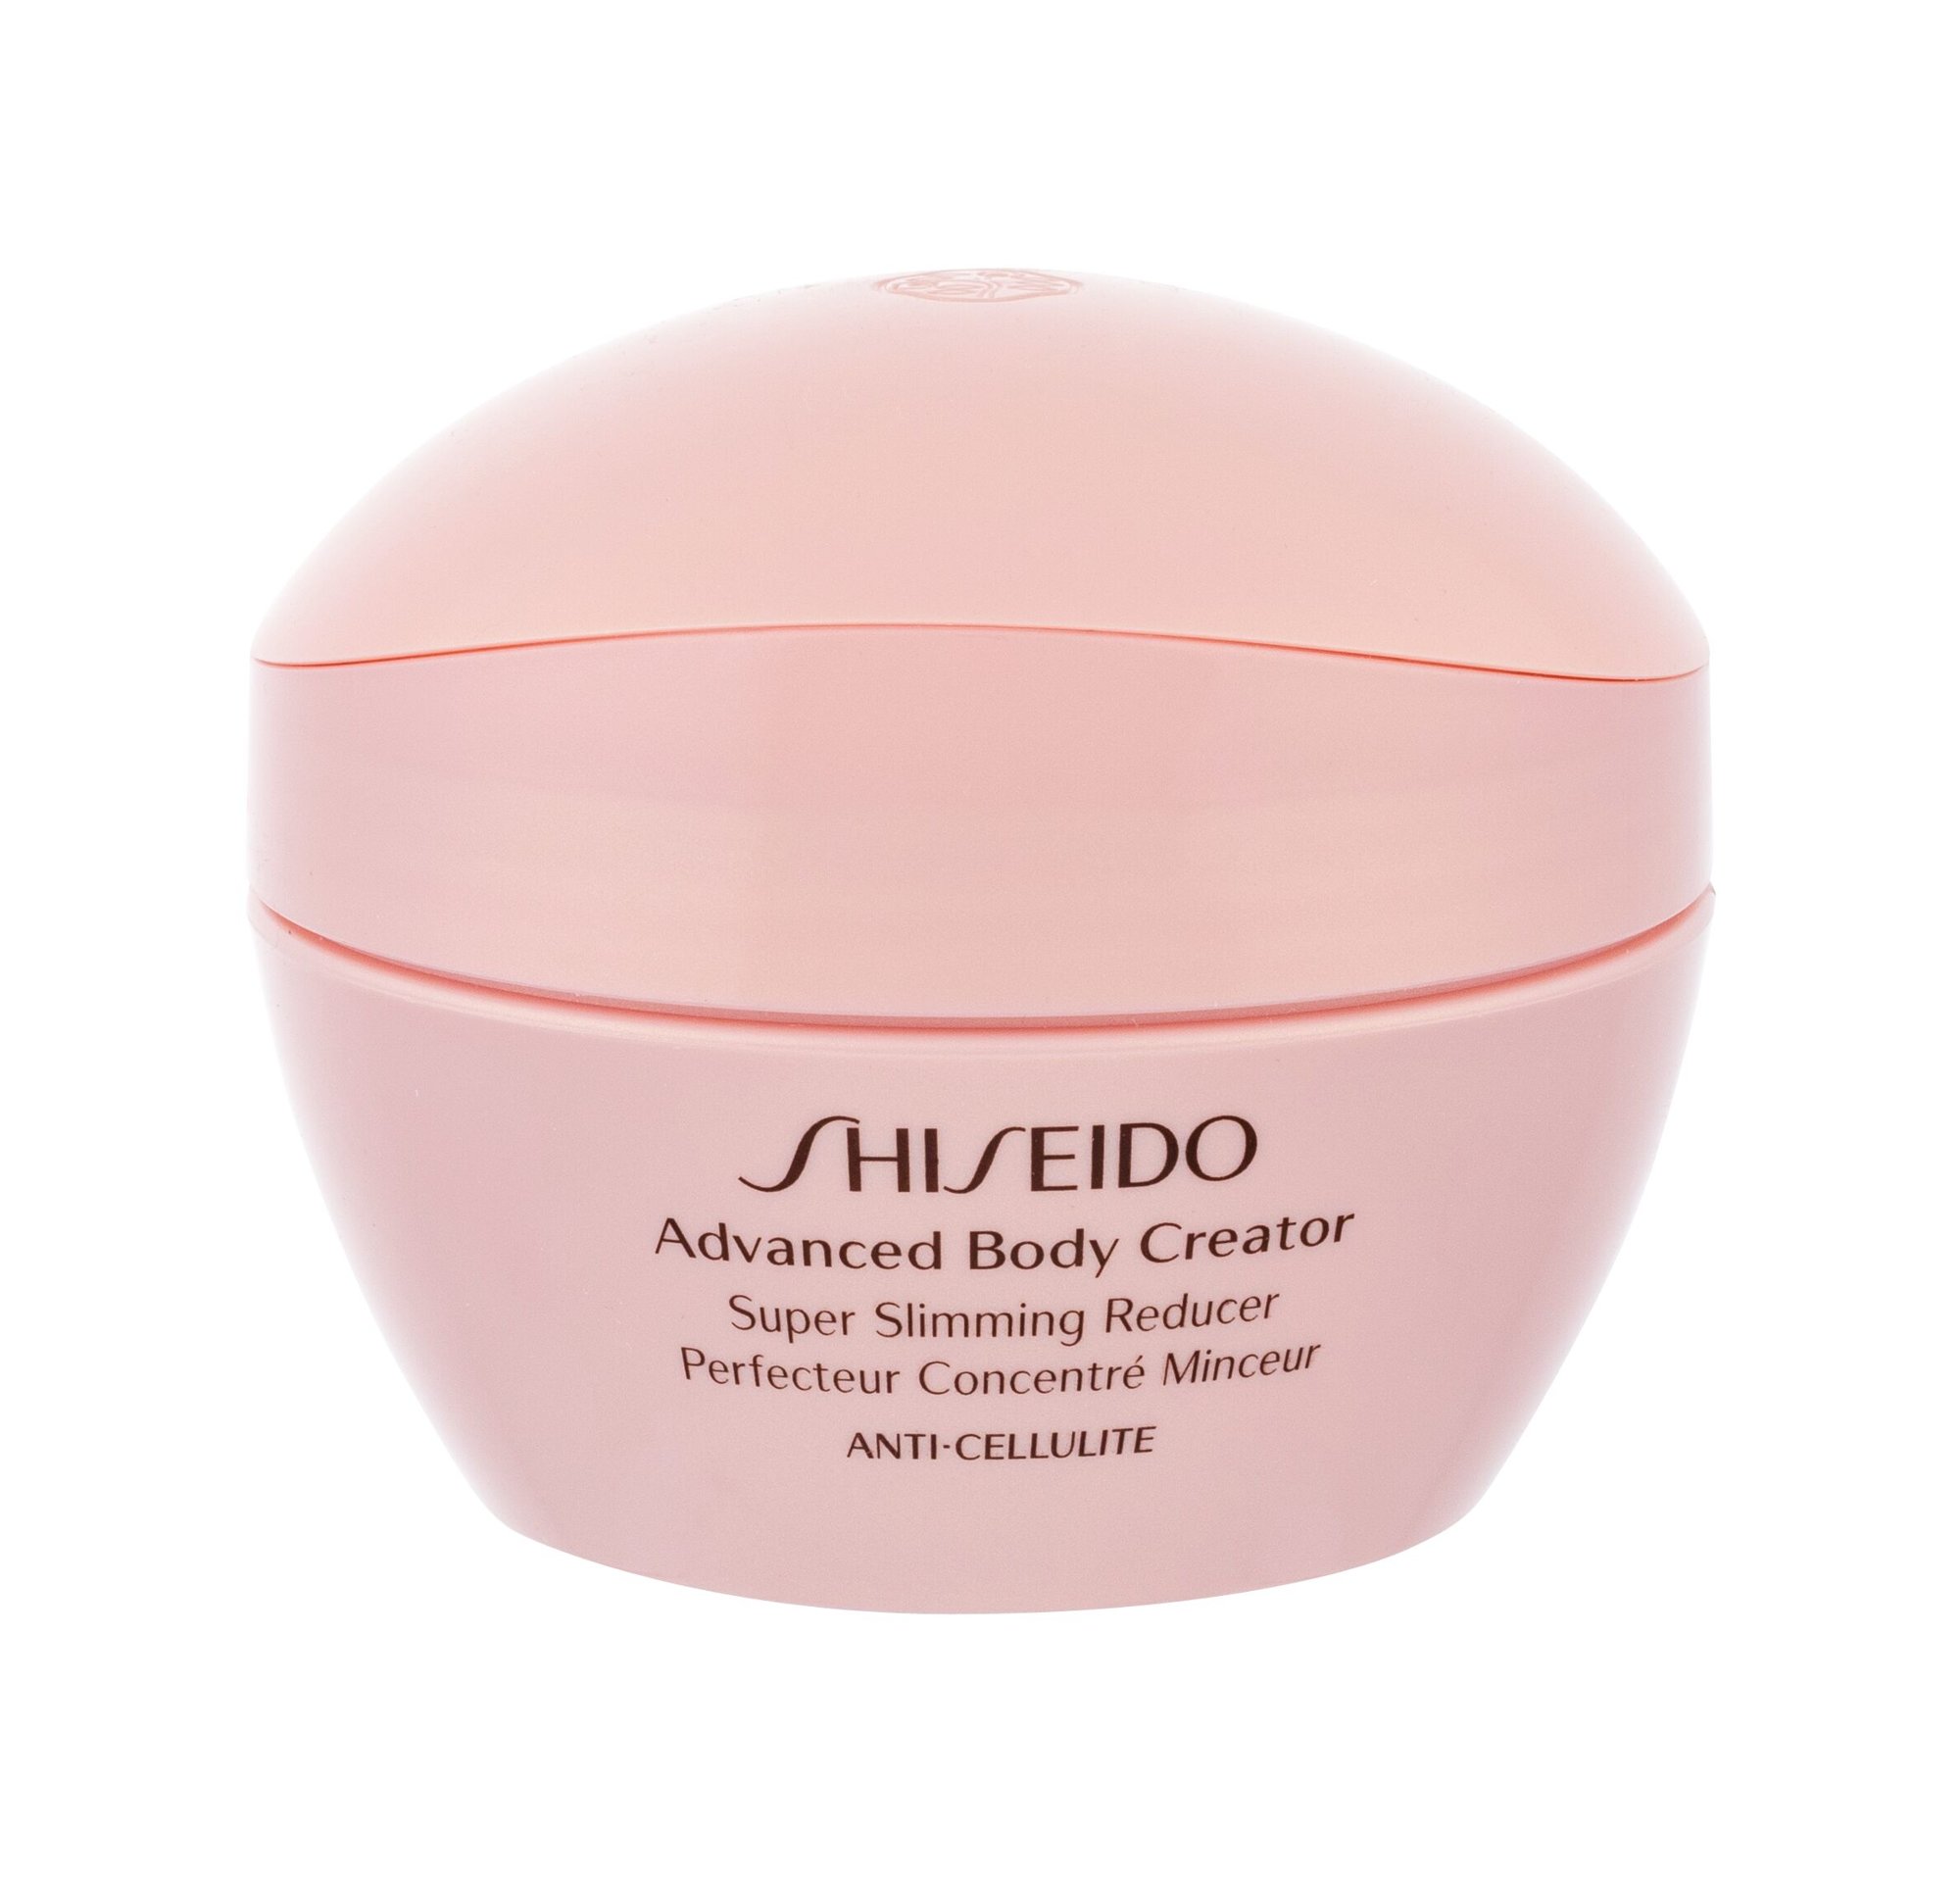 Shiseido Advanced Body Creator Super Slimming Reducer priemonė celiulitui ir strijoms